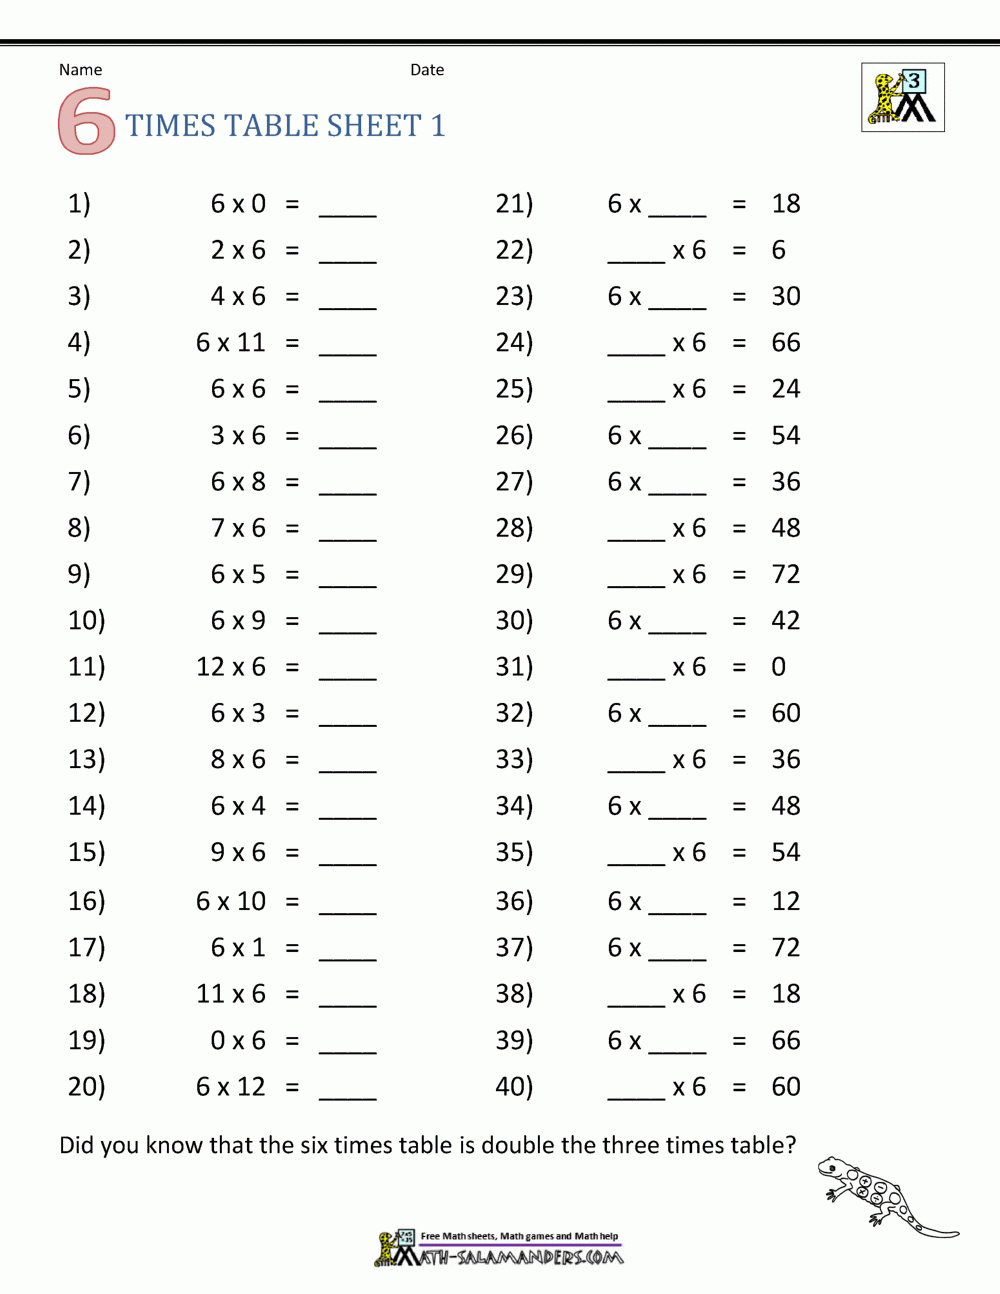 Multiplication Drill Sheets 3Rd Grade regarding Multiplication Worksheets 7 8 9